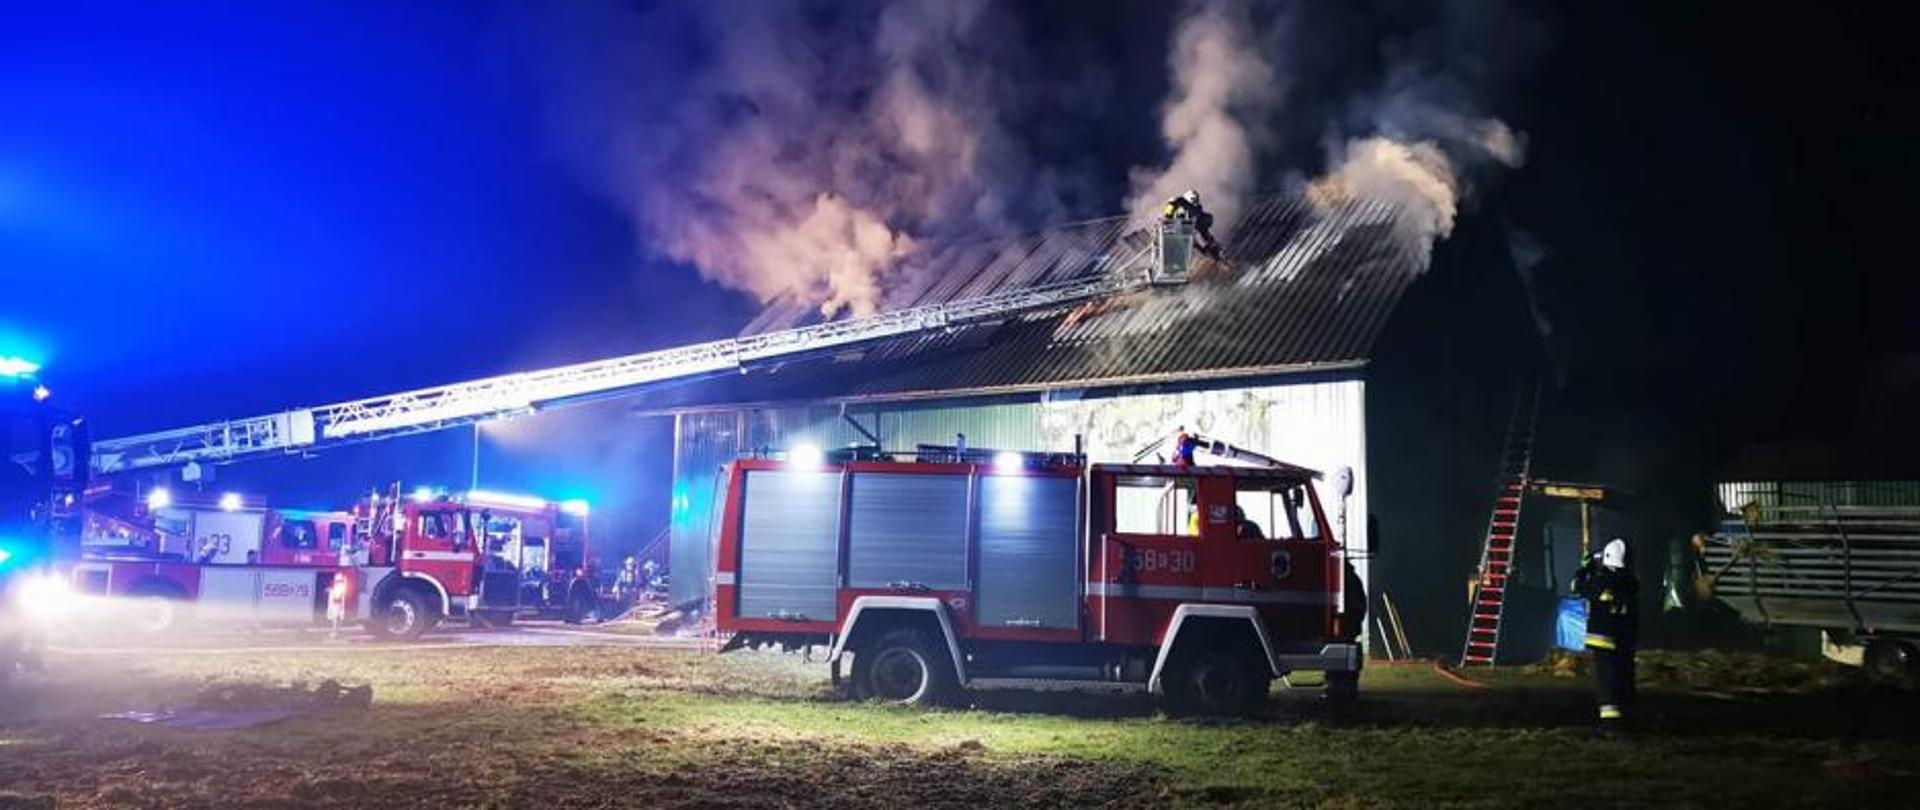 Na zdjęciu budynek jednokondygnacyjny z poddaszem objęty pożarem. Widoczny wydobywający się dym z dachu. Na zdjęciu również rozstawiona drabina pożarnicza oraz samochody ratowniczo - gaśnicze w czasie prowadzonych działań